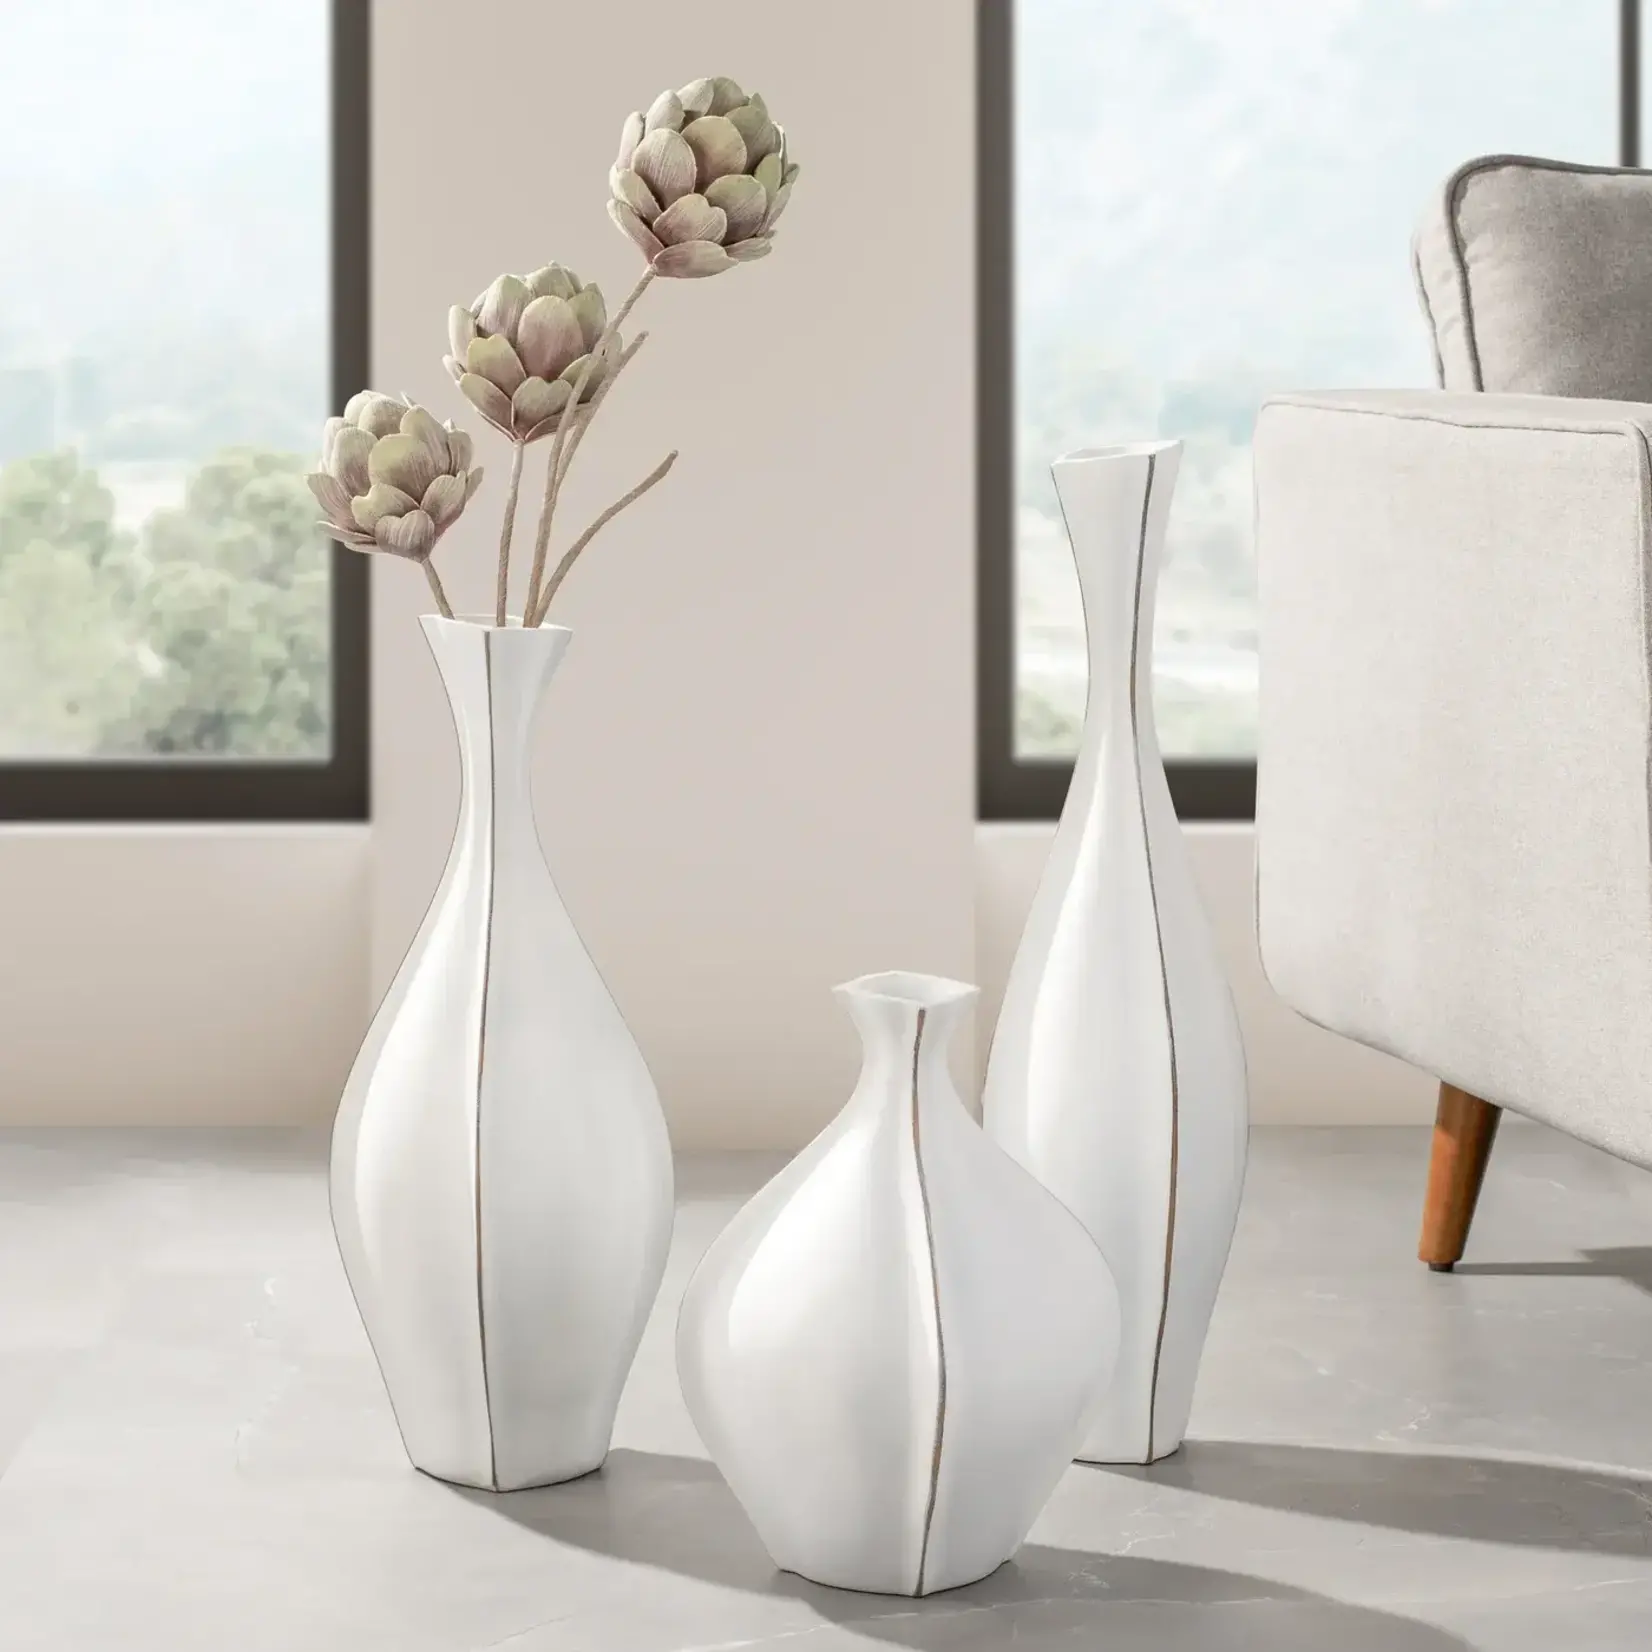 Torre & Tagus Whimsical Resin Vase - 22"